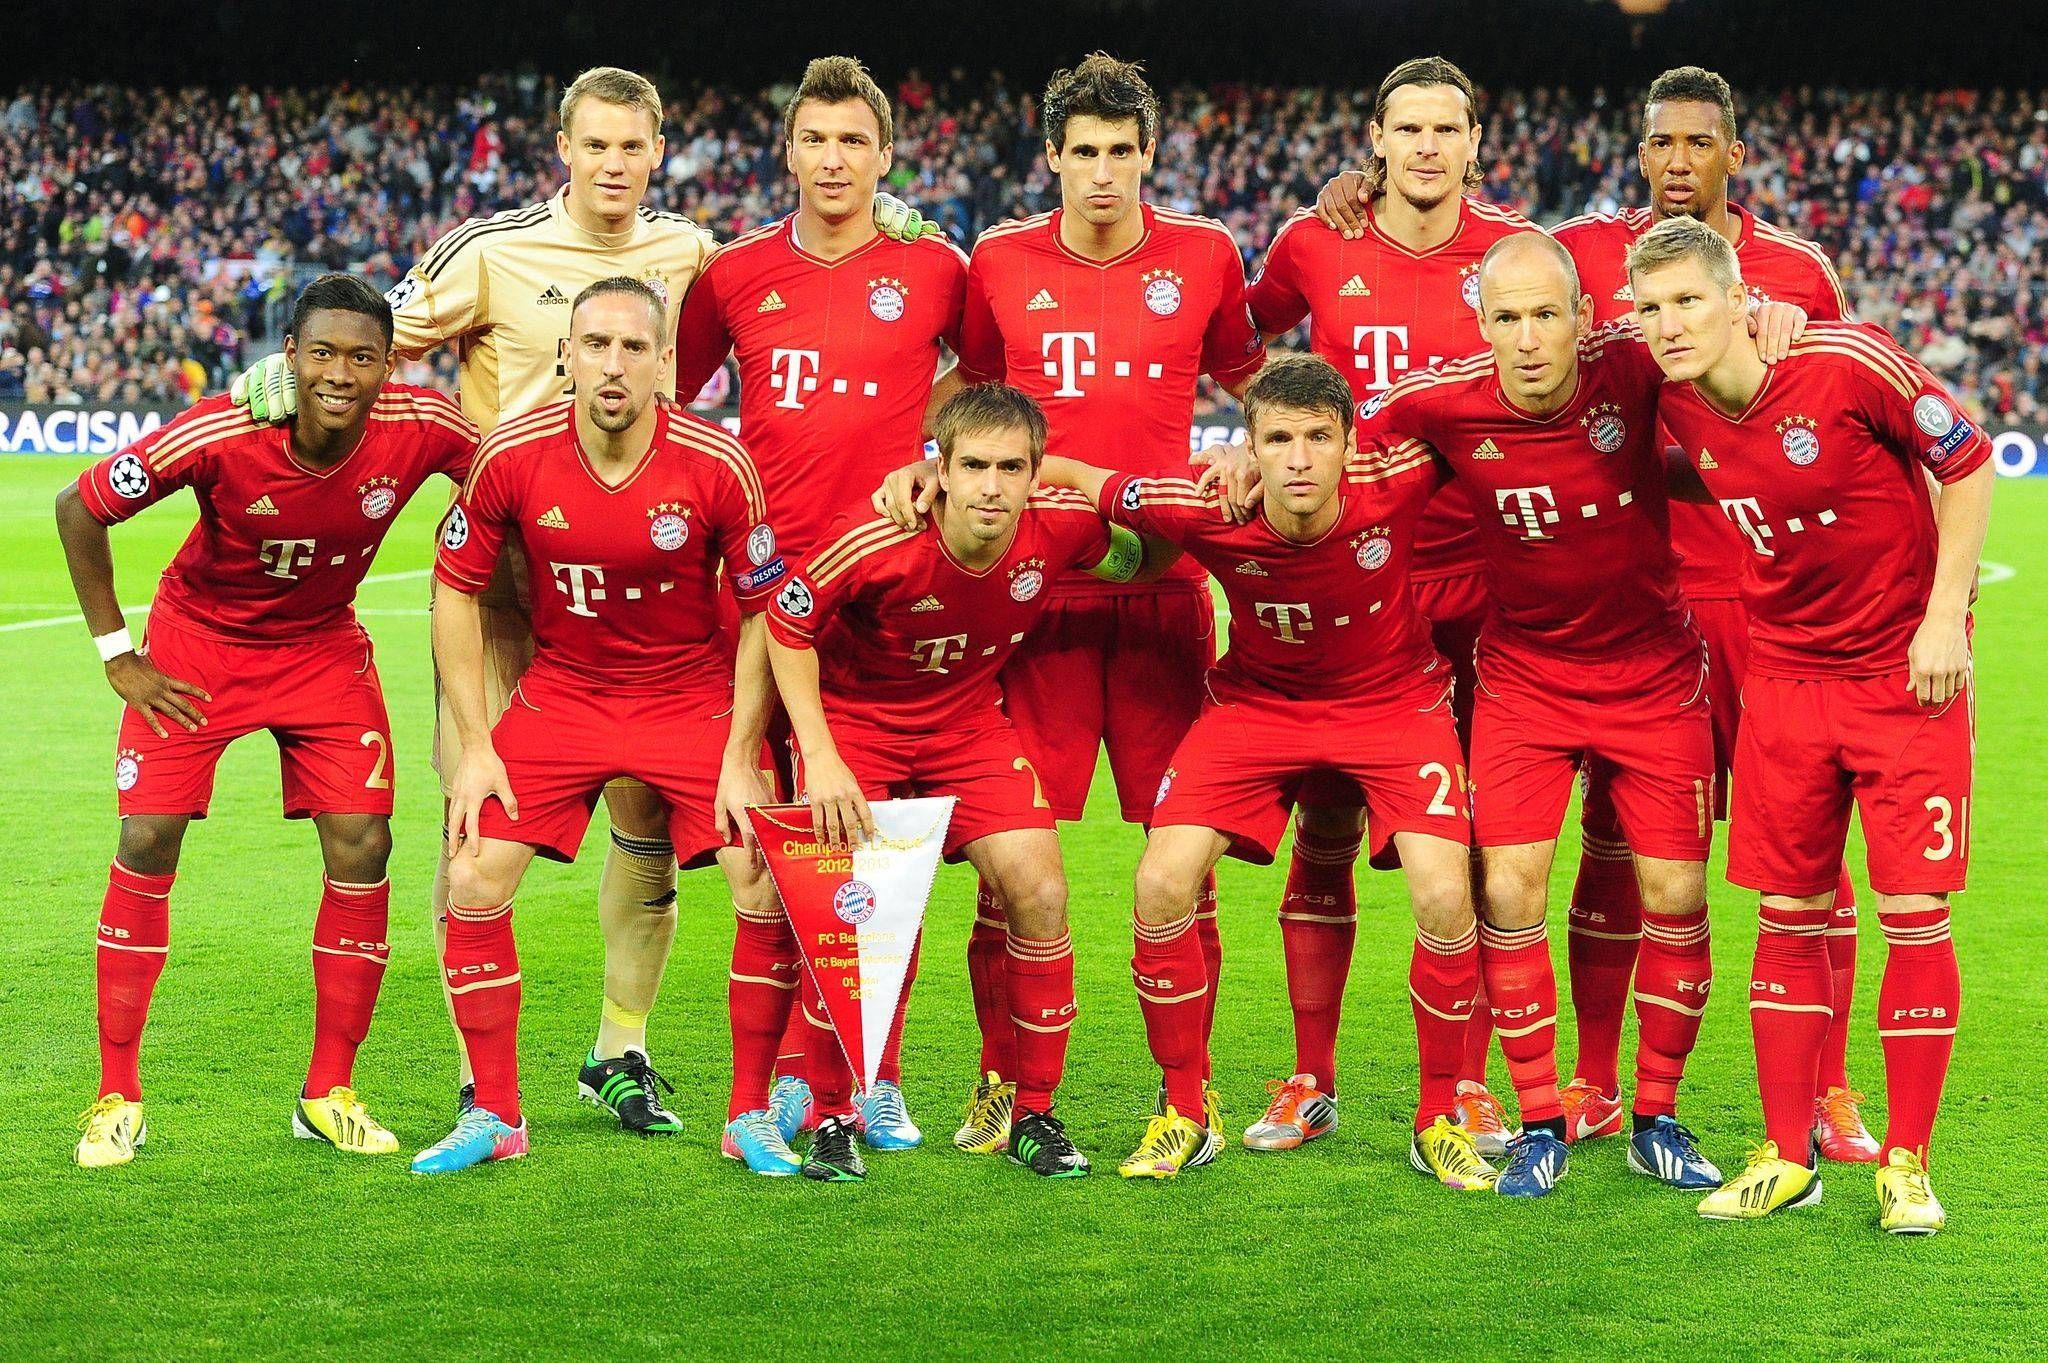 Bayern Munich Squad Wallpapers Top Free Bayern Munich Squad